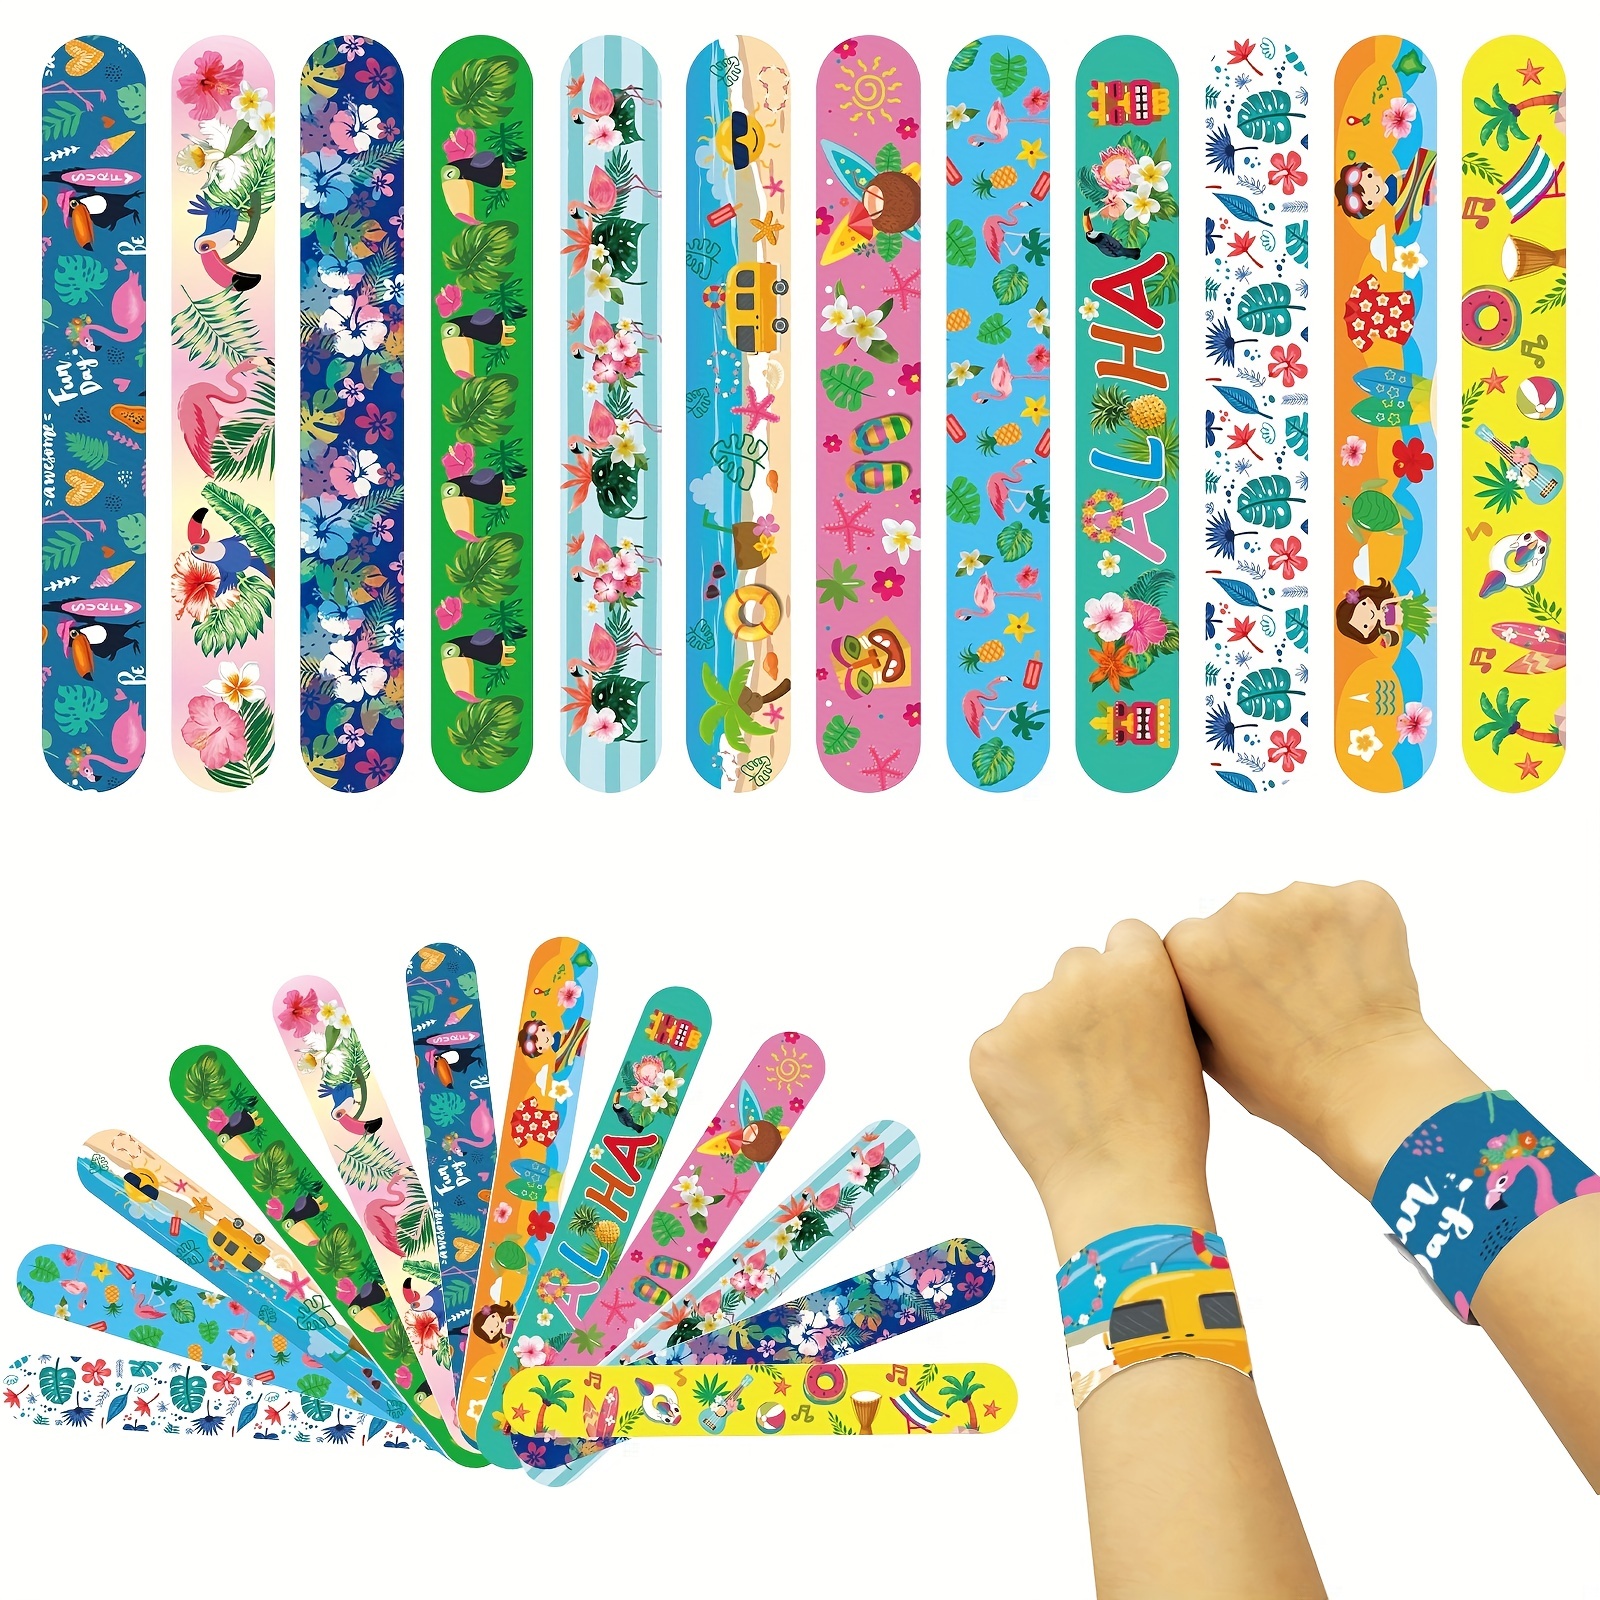 Ruler Slap Bracelets Bands Colorful Ruler Snap Bands - Temu